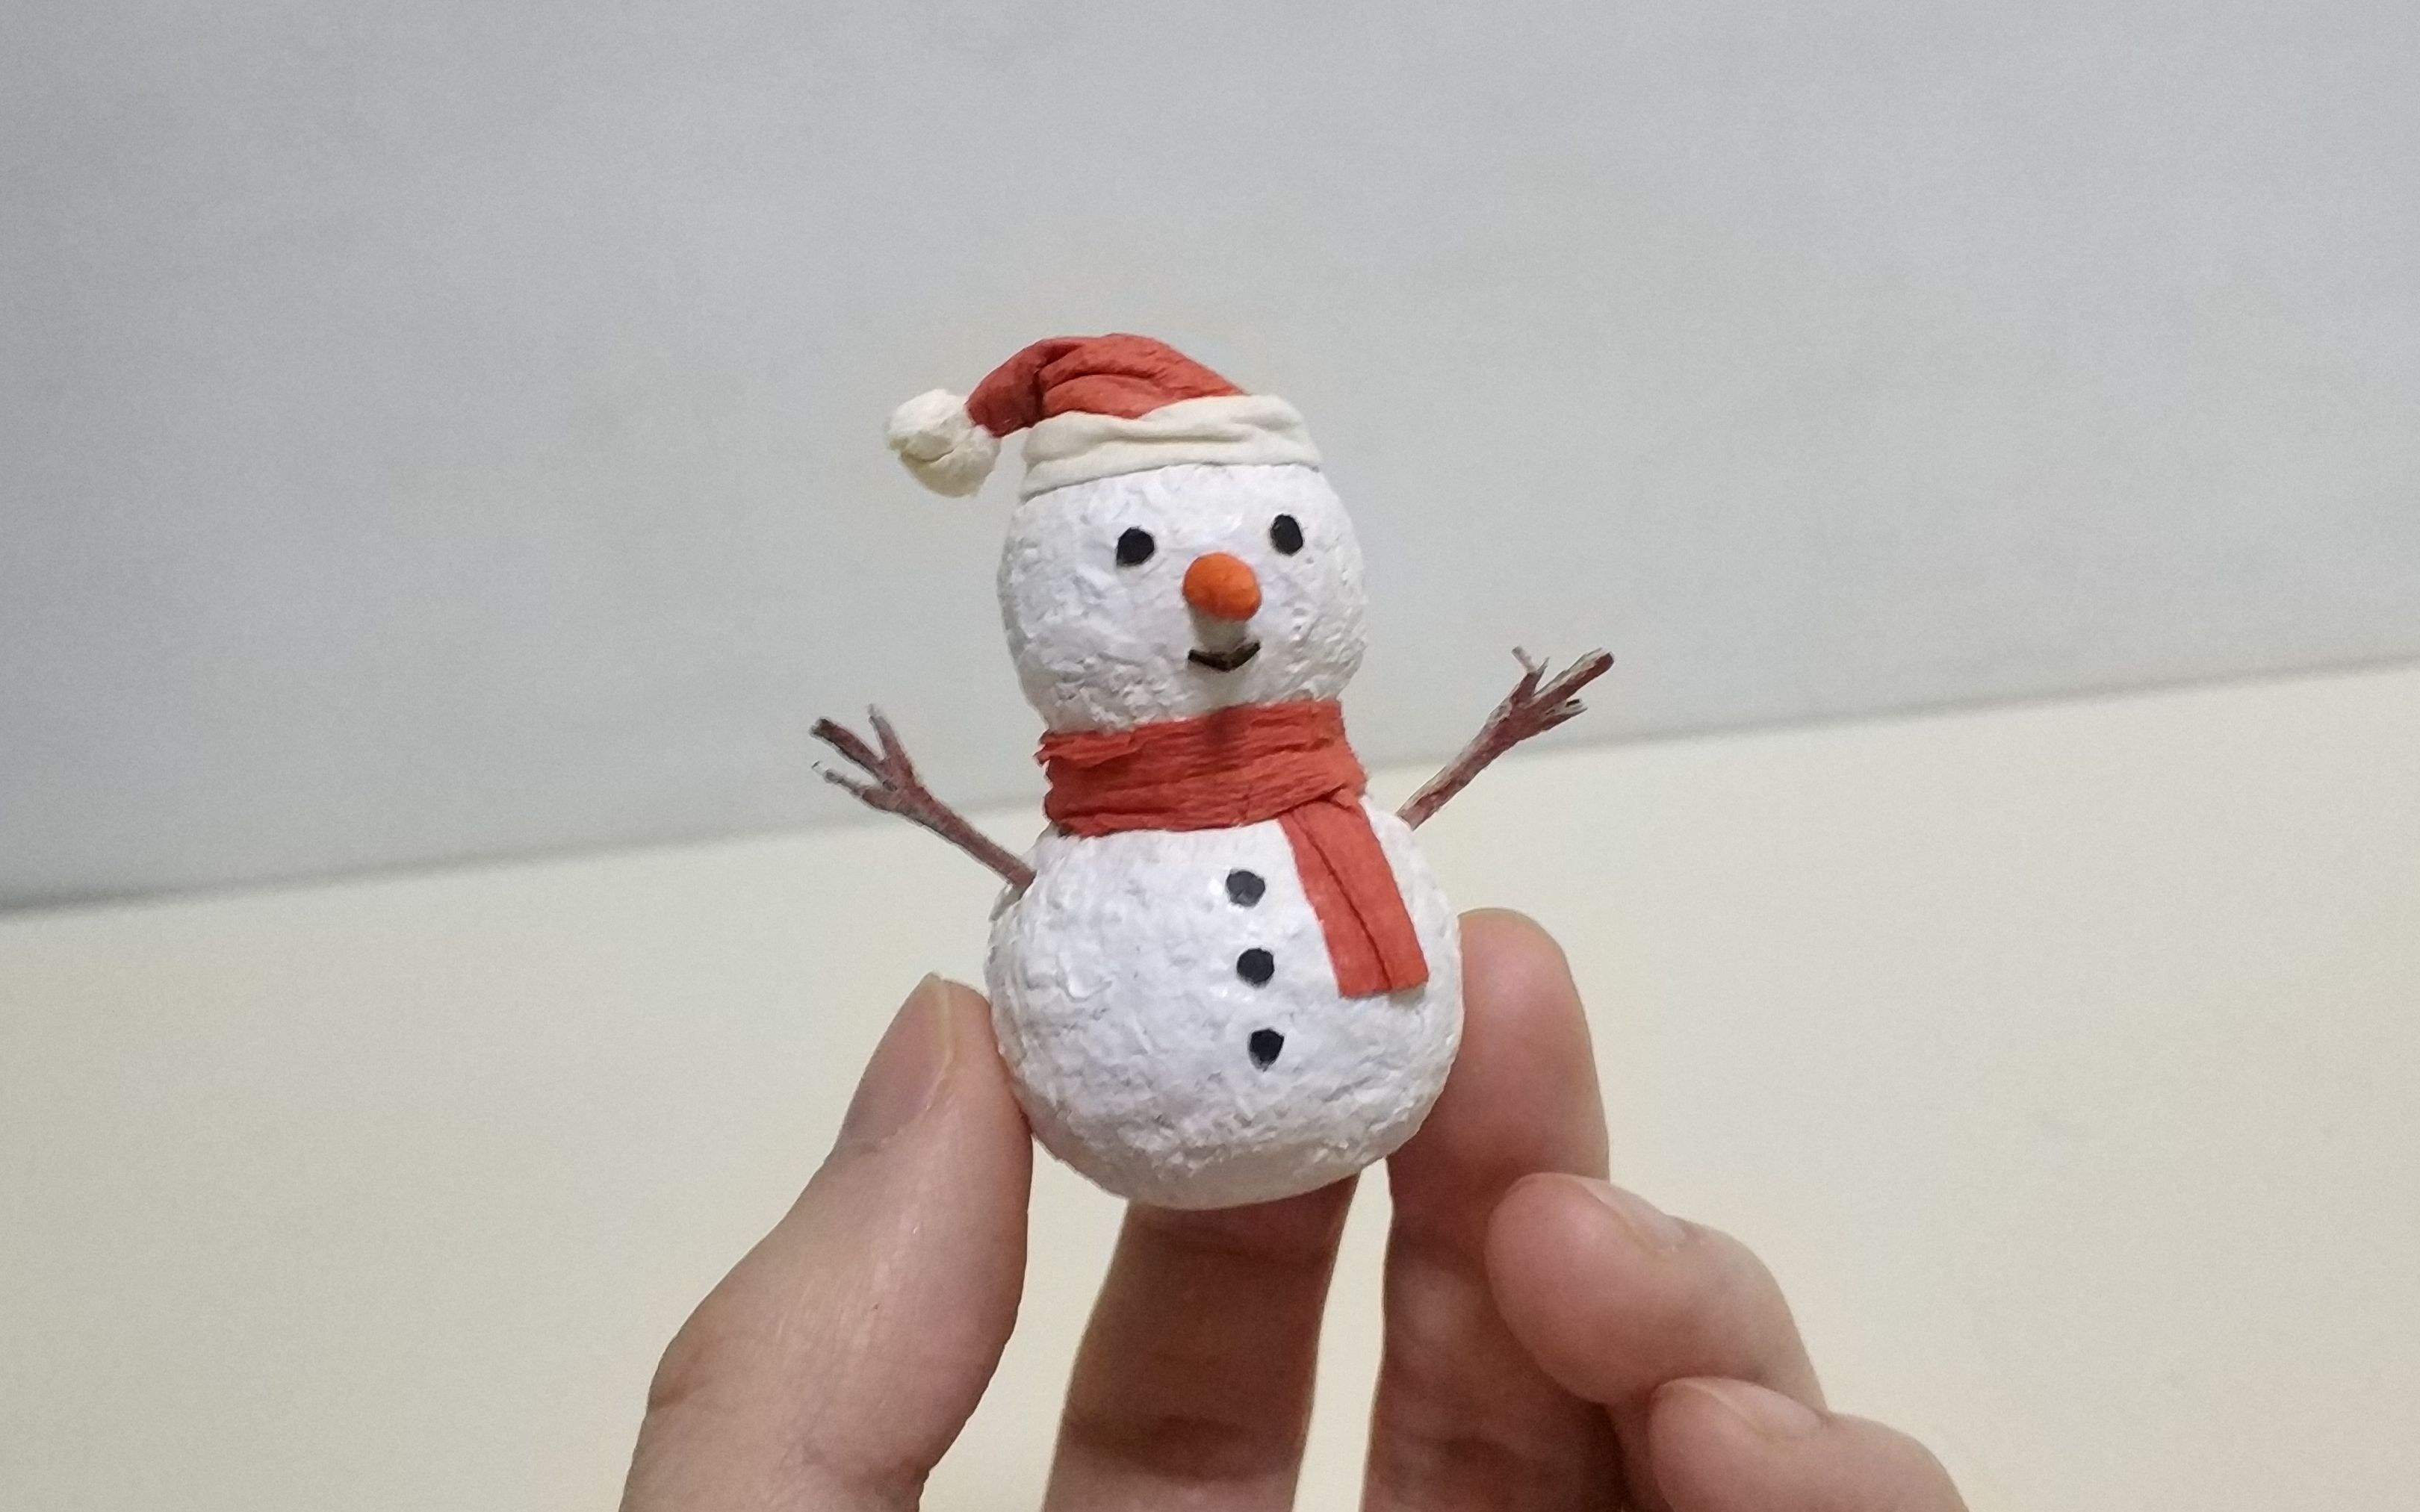 可爱圣诞小雪人图片素材免费下载 - 觅知网